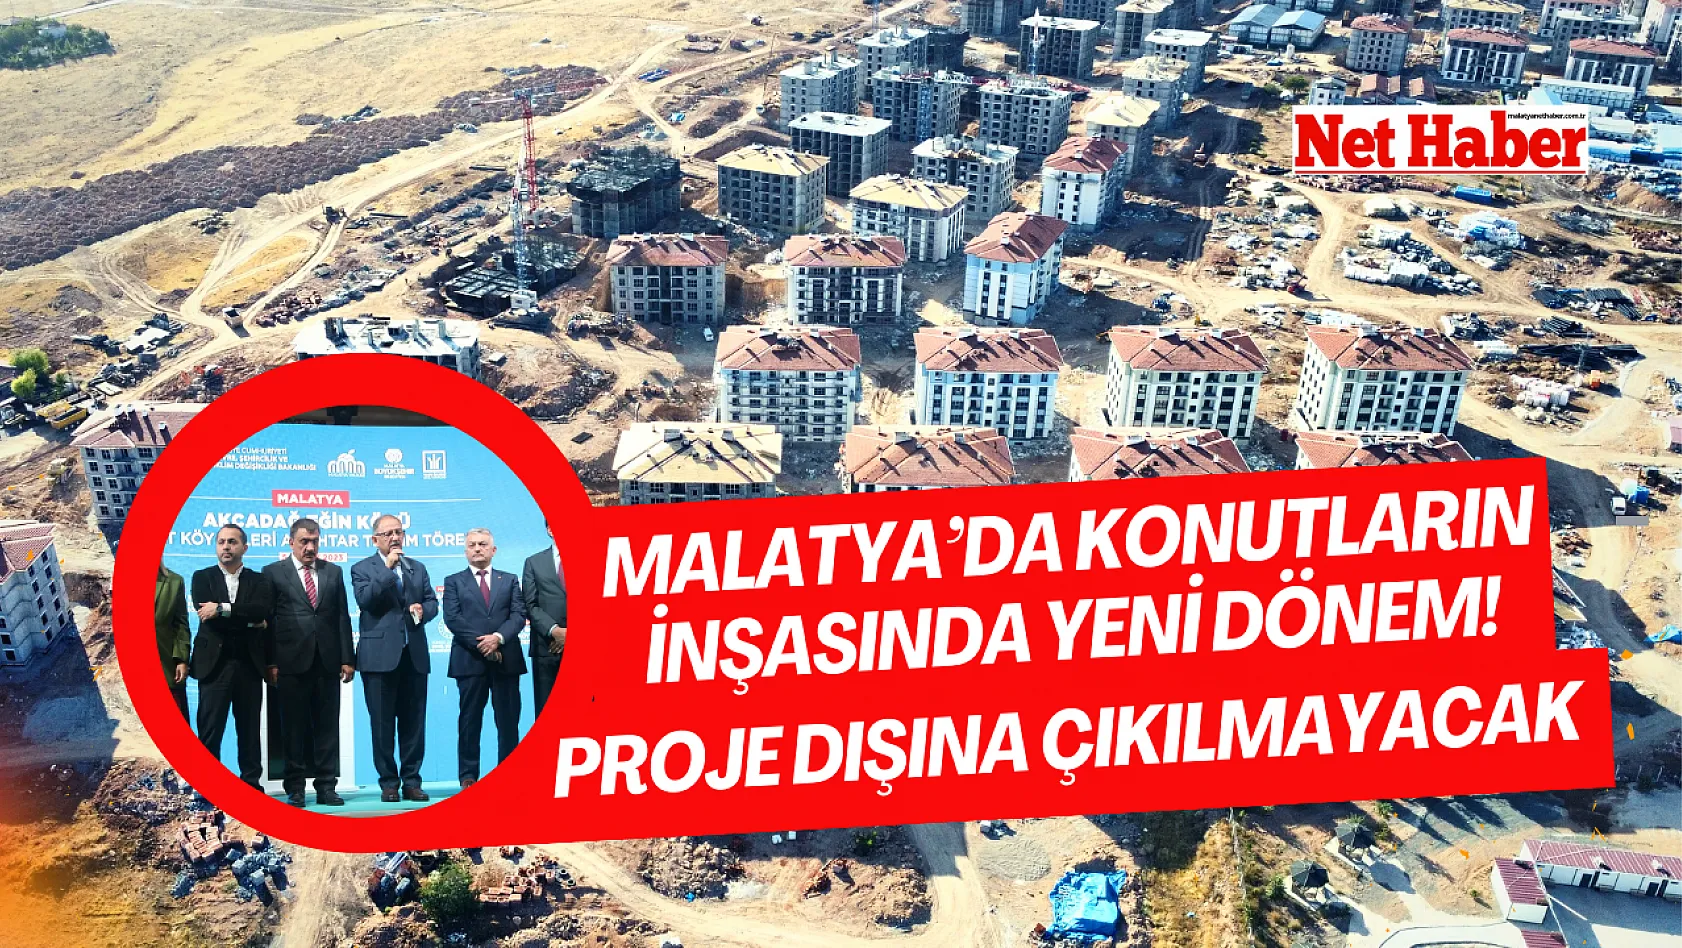 Malatya'da konutların inşasında yeni dönem! Proje dışına çıkılmayacak